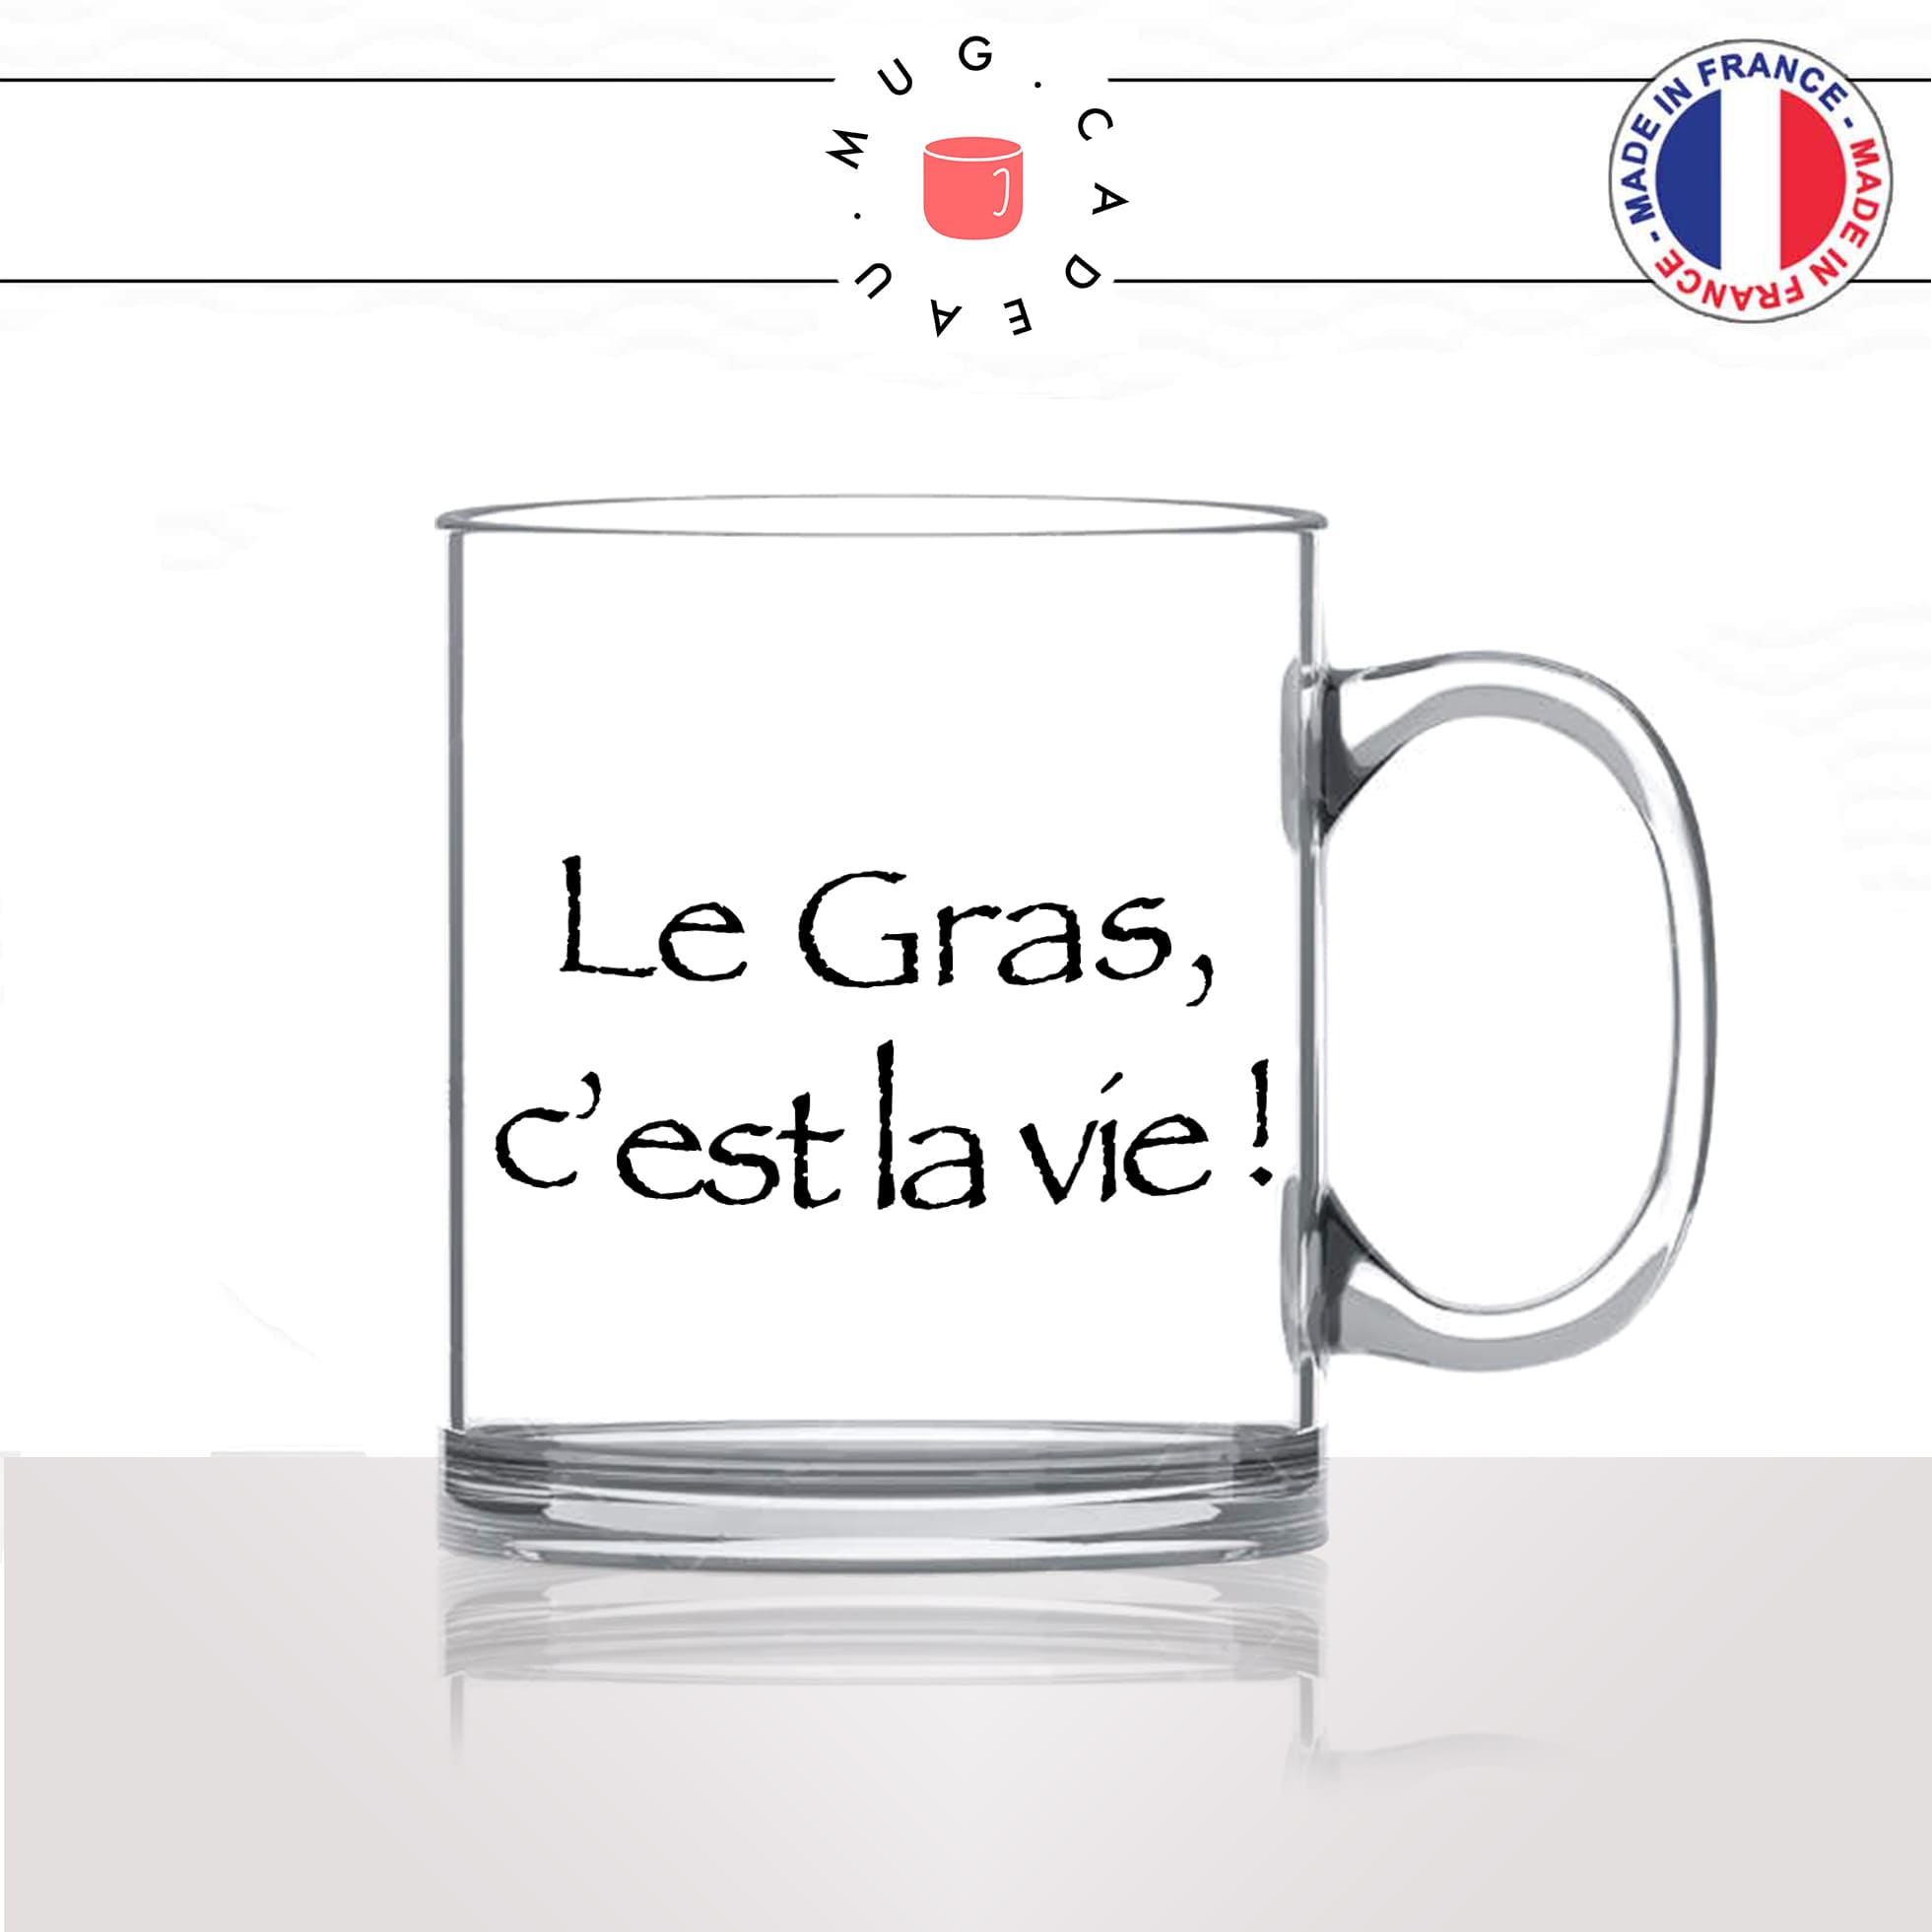 mug-tasse-en-verre-transparent-glass-série-francaise-culte-kaamelott-arthur-le-gras-cest-la-vie-caradoc-humour-télé-idée-cadeau-fun-cool-café-thé2